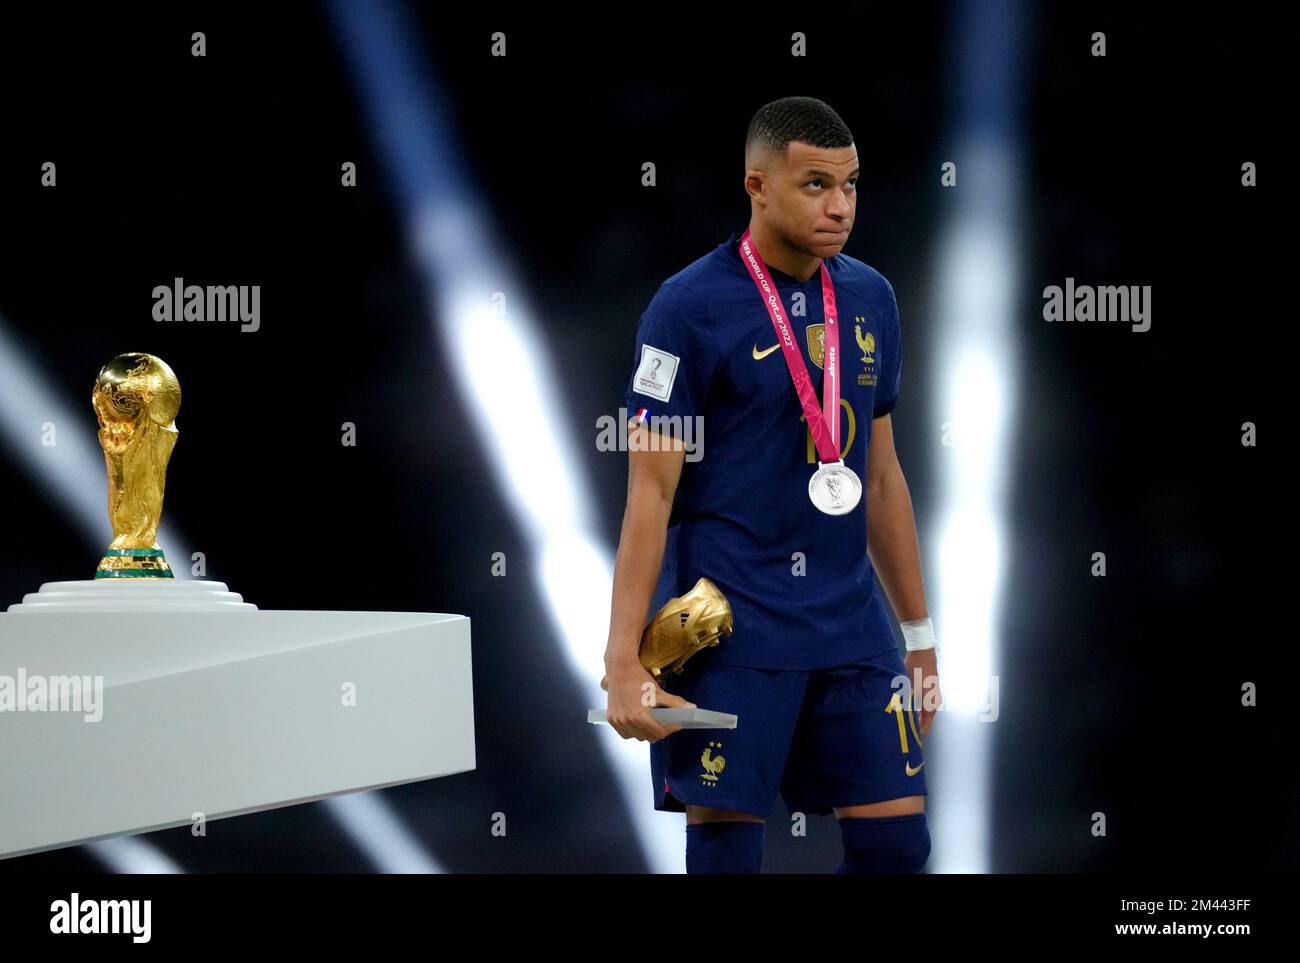 Kylian Mbappe, en France, passe devant le trophée de la coupe du monde de la FIFA après avoir reçu sa deuxième place après sa défaite lors de la finale de la coupe du monde de la FIFA au stade Lusail, au Qatar. Date de la photo: Dimanche 18 décembre 2022. Banque D'Images